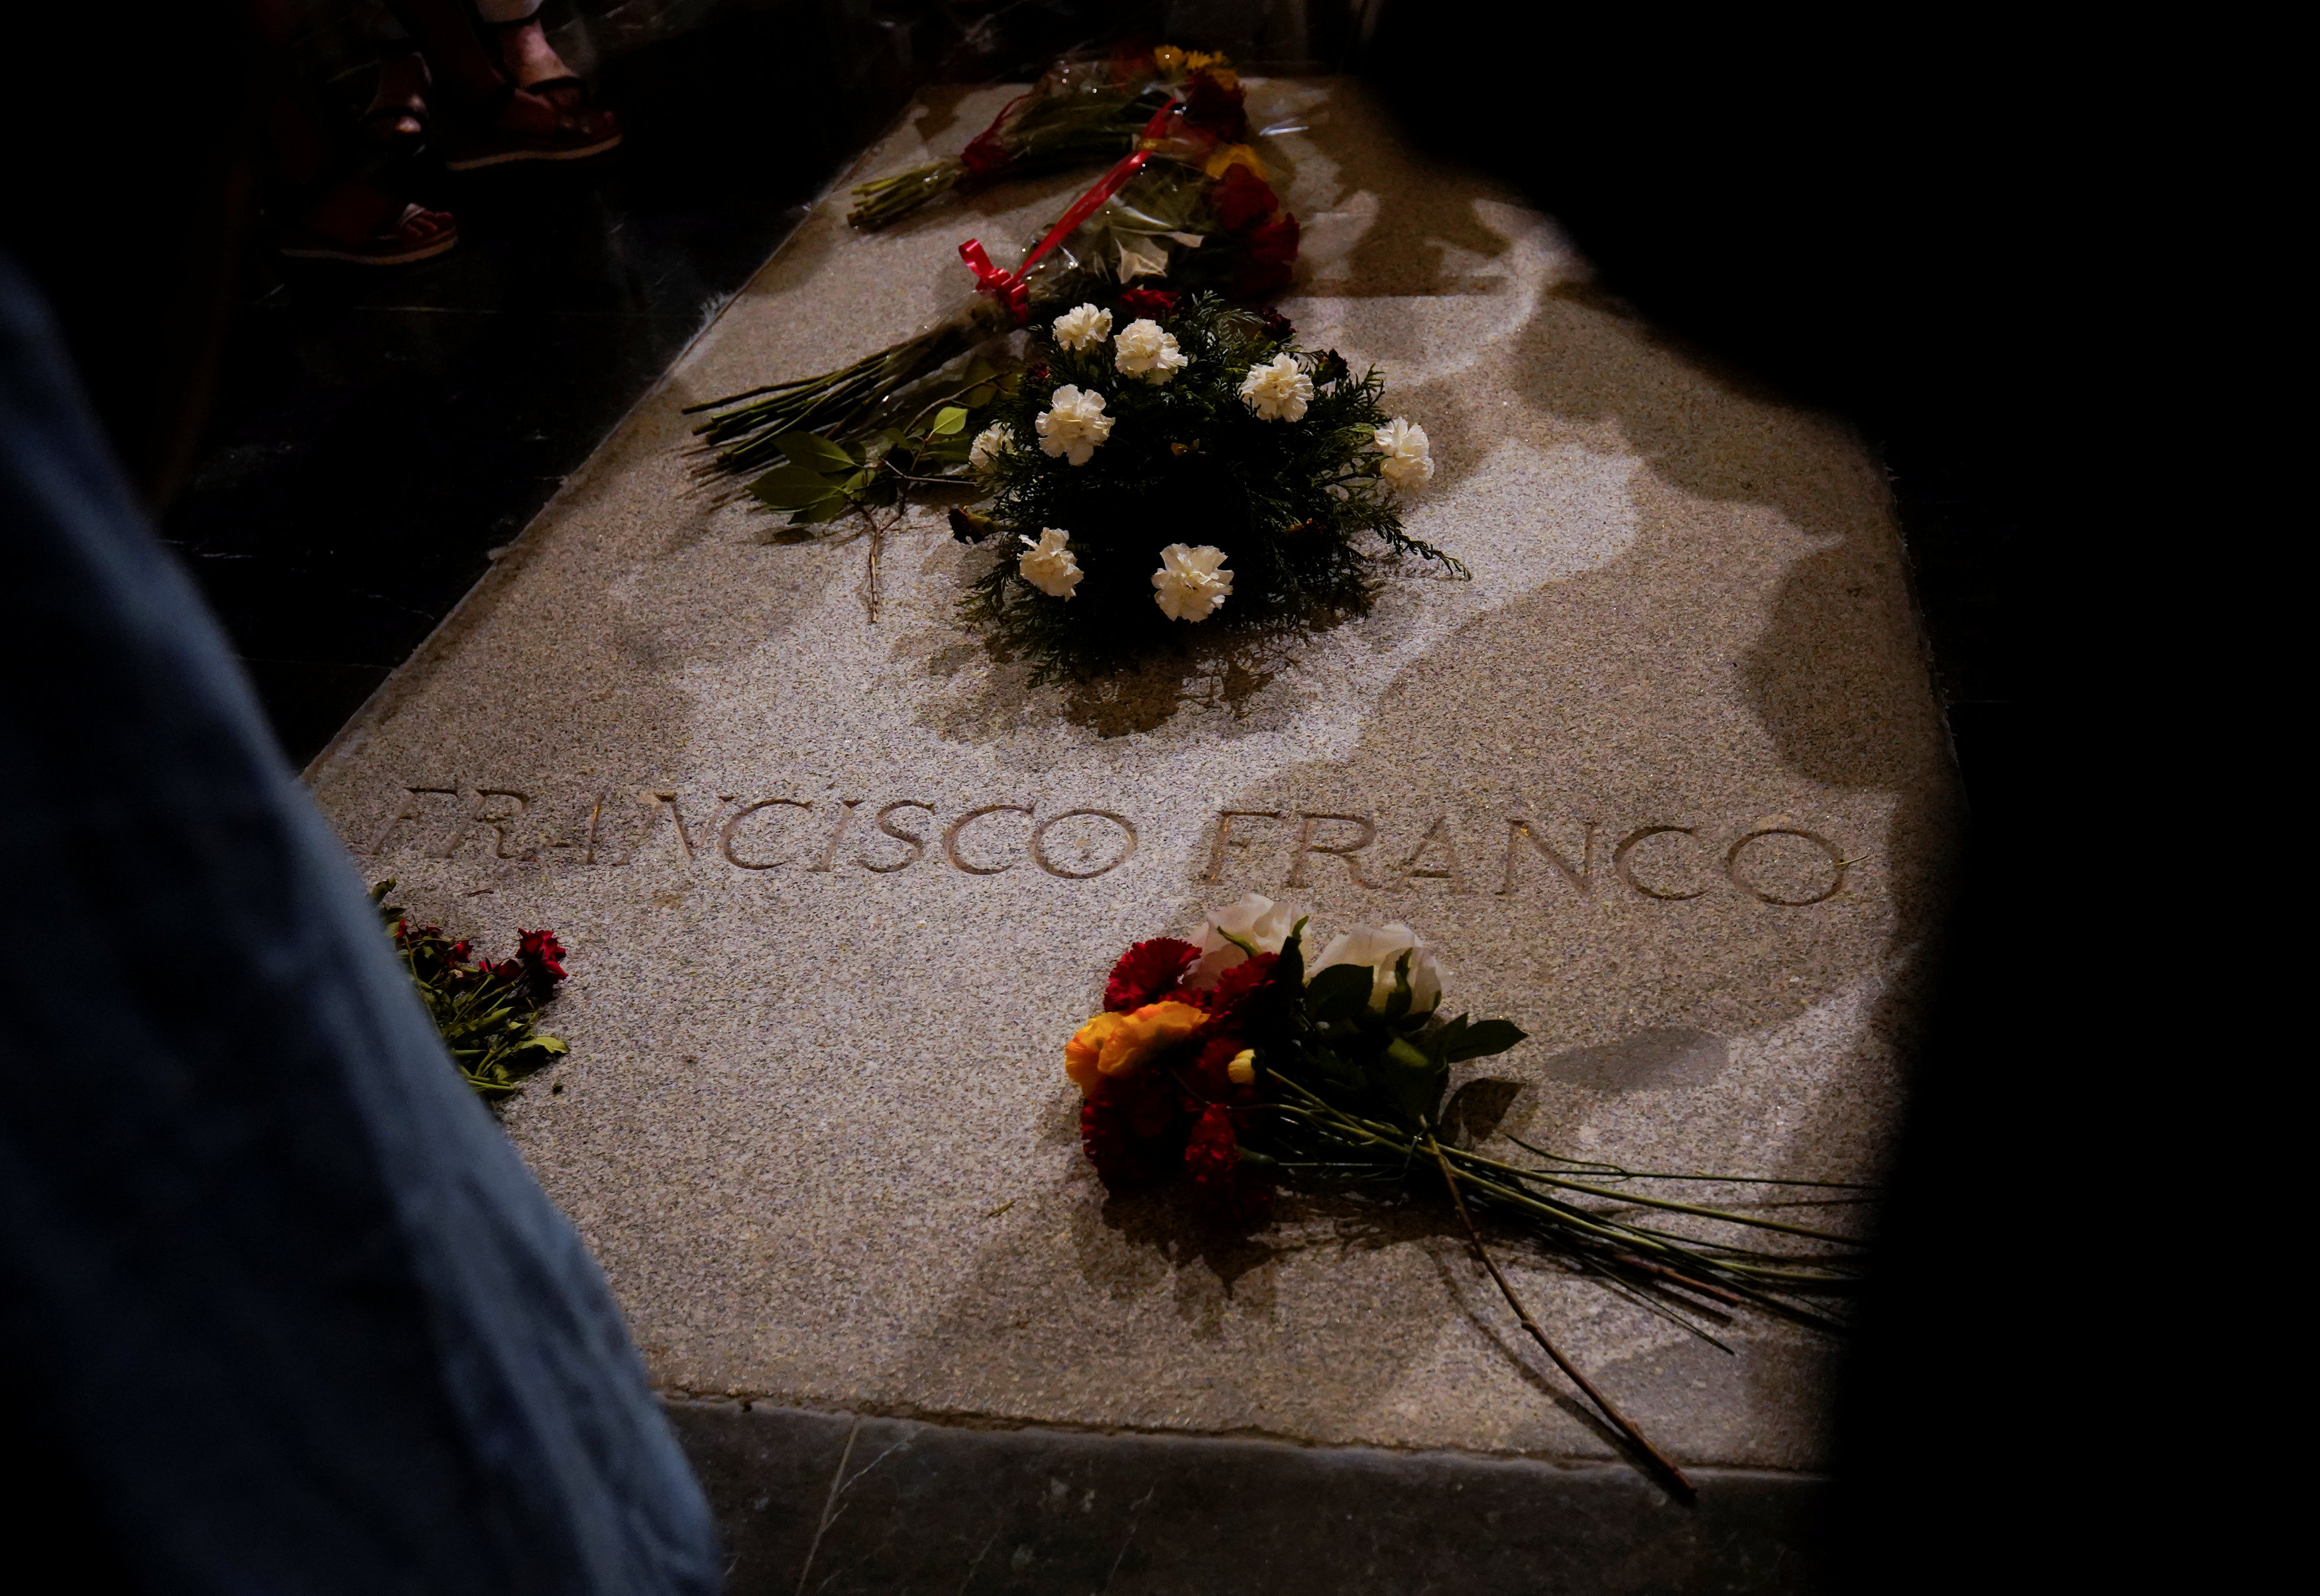 Familia de Francisco Franco se hará cargo de sus restos si es exhumado